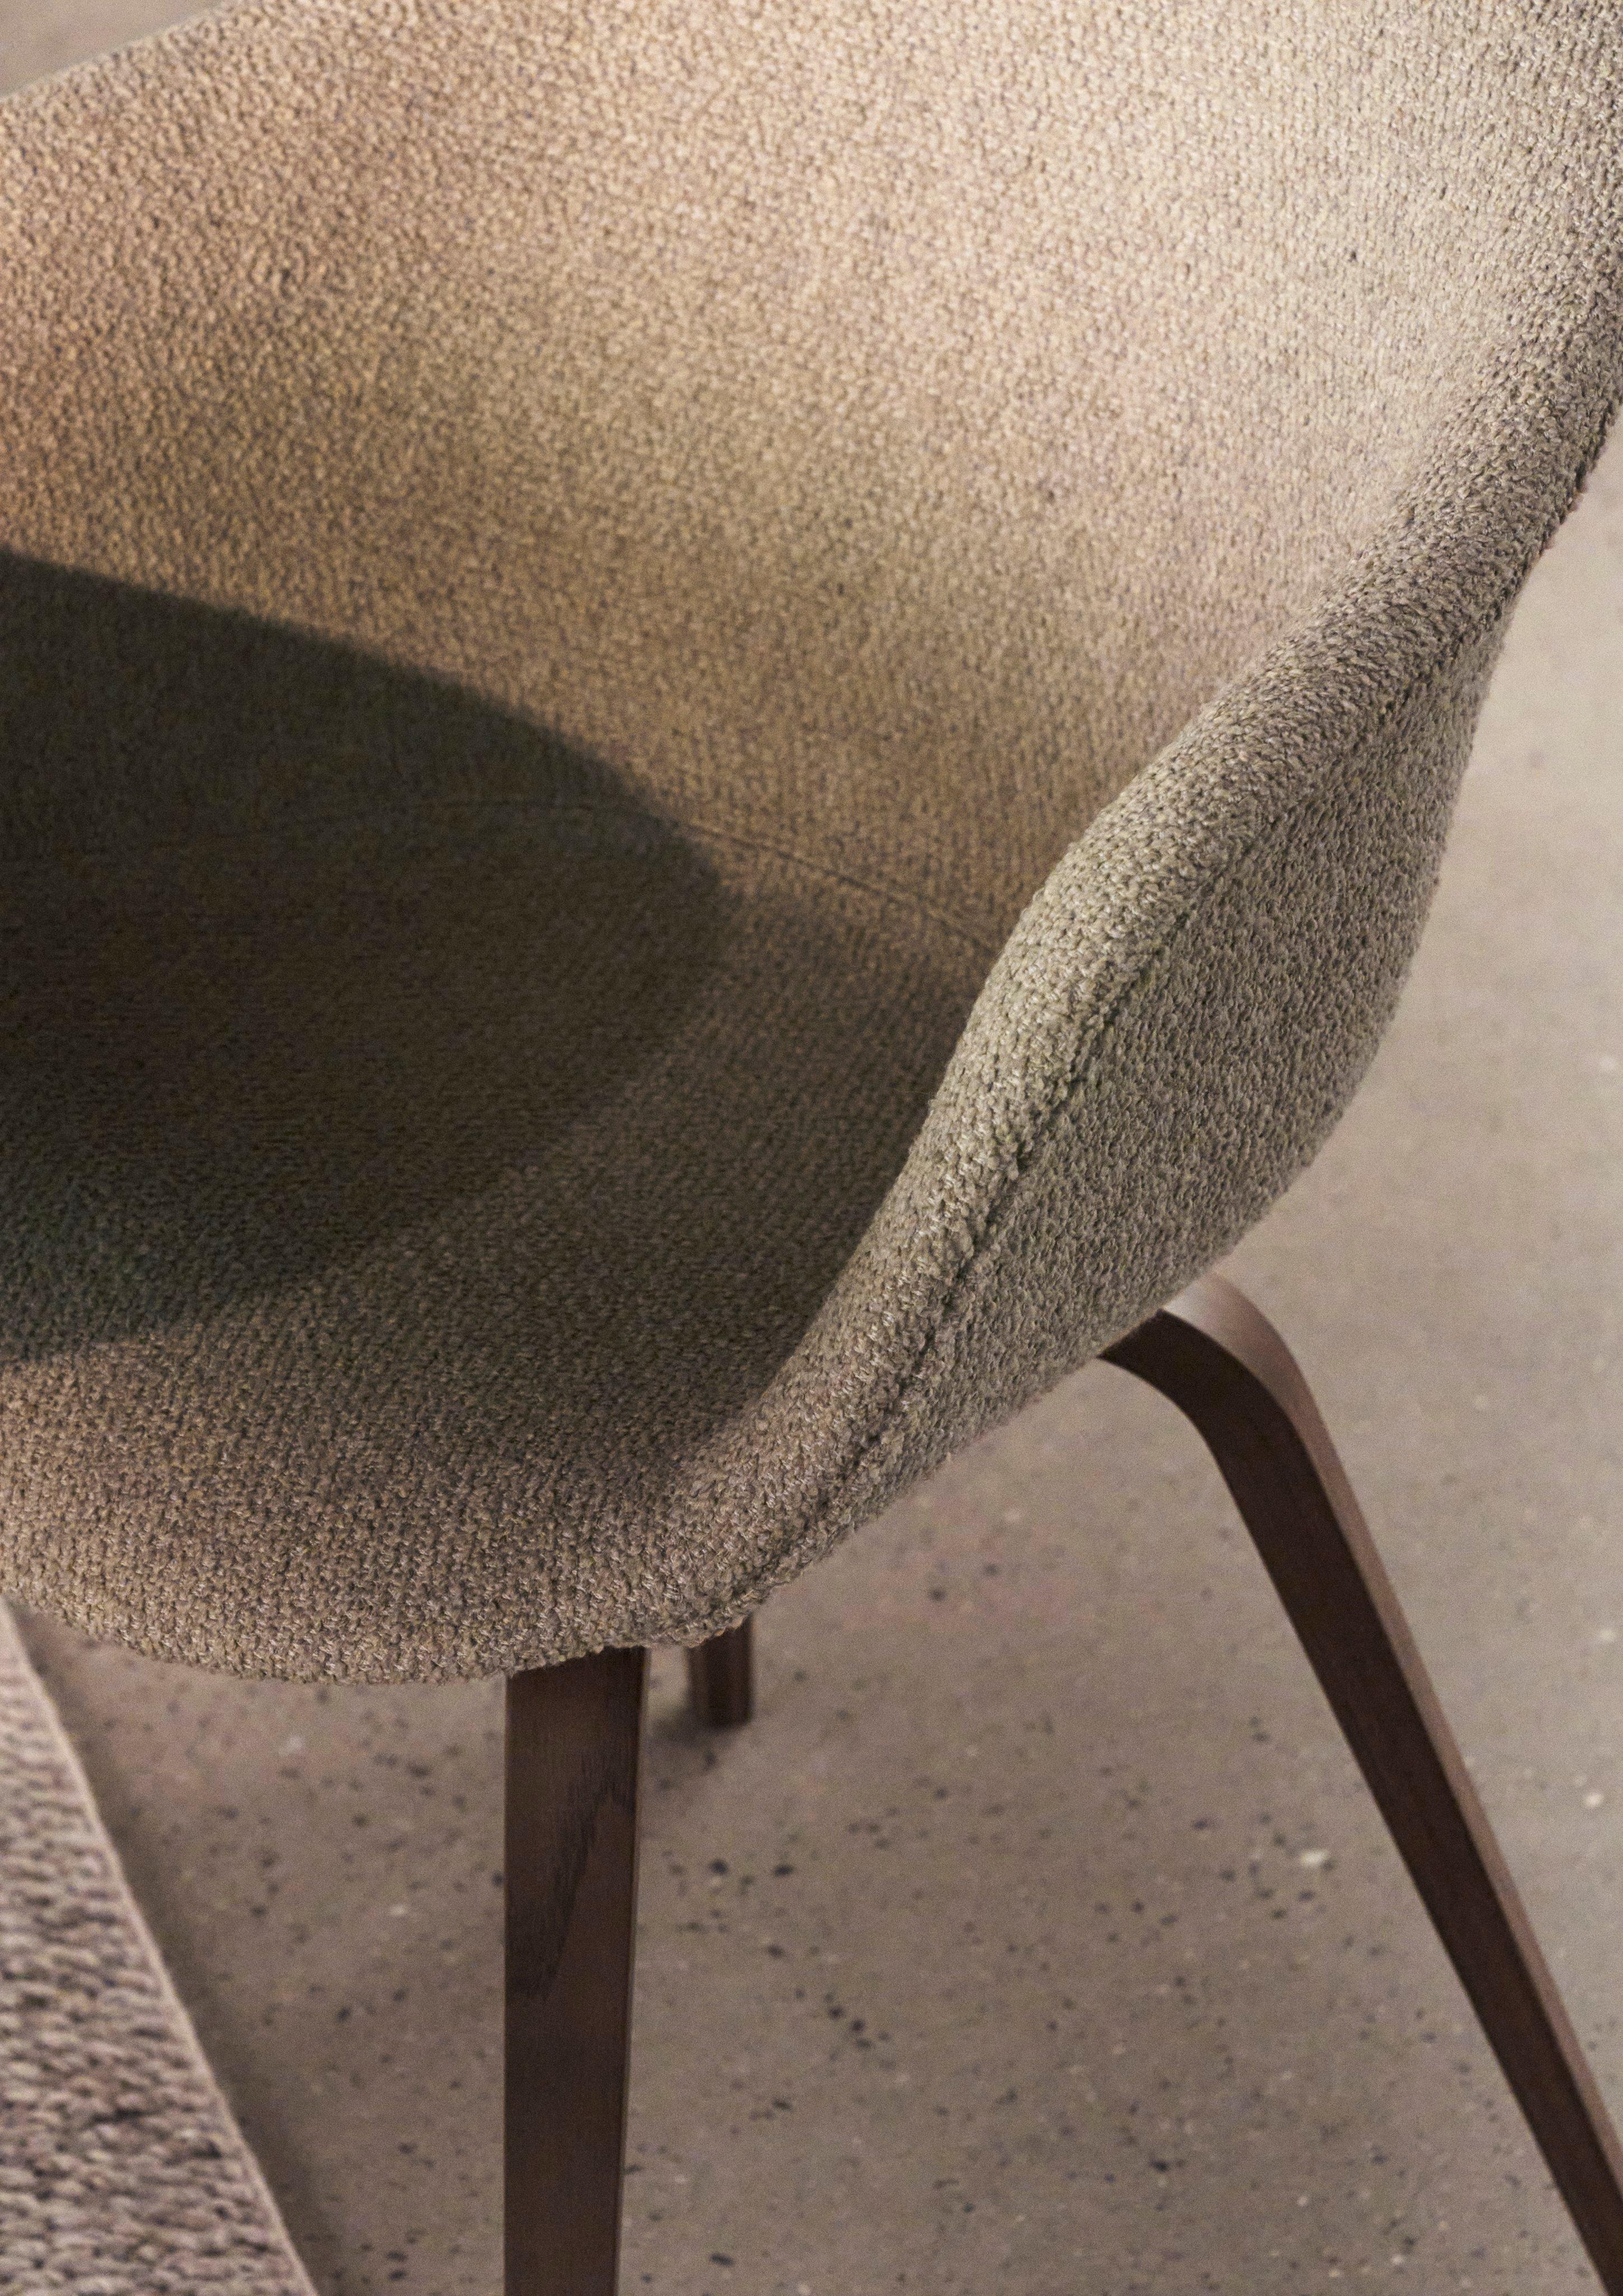 採用白色 Lazio 布料襯墊的包覆感 Hauge 餐椅特寫。